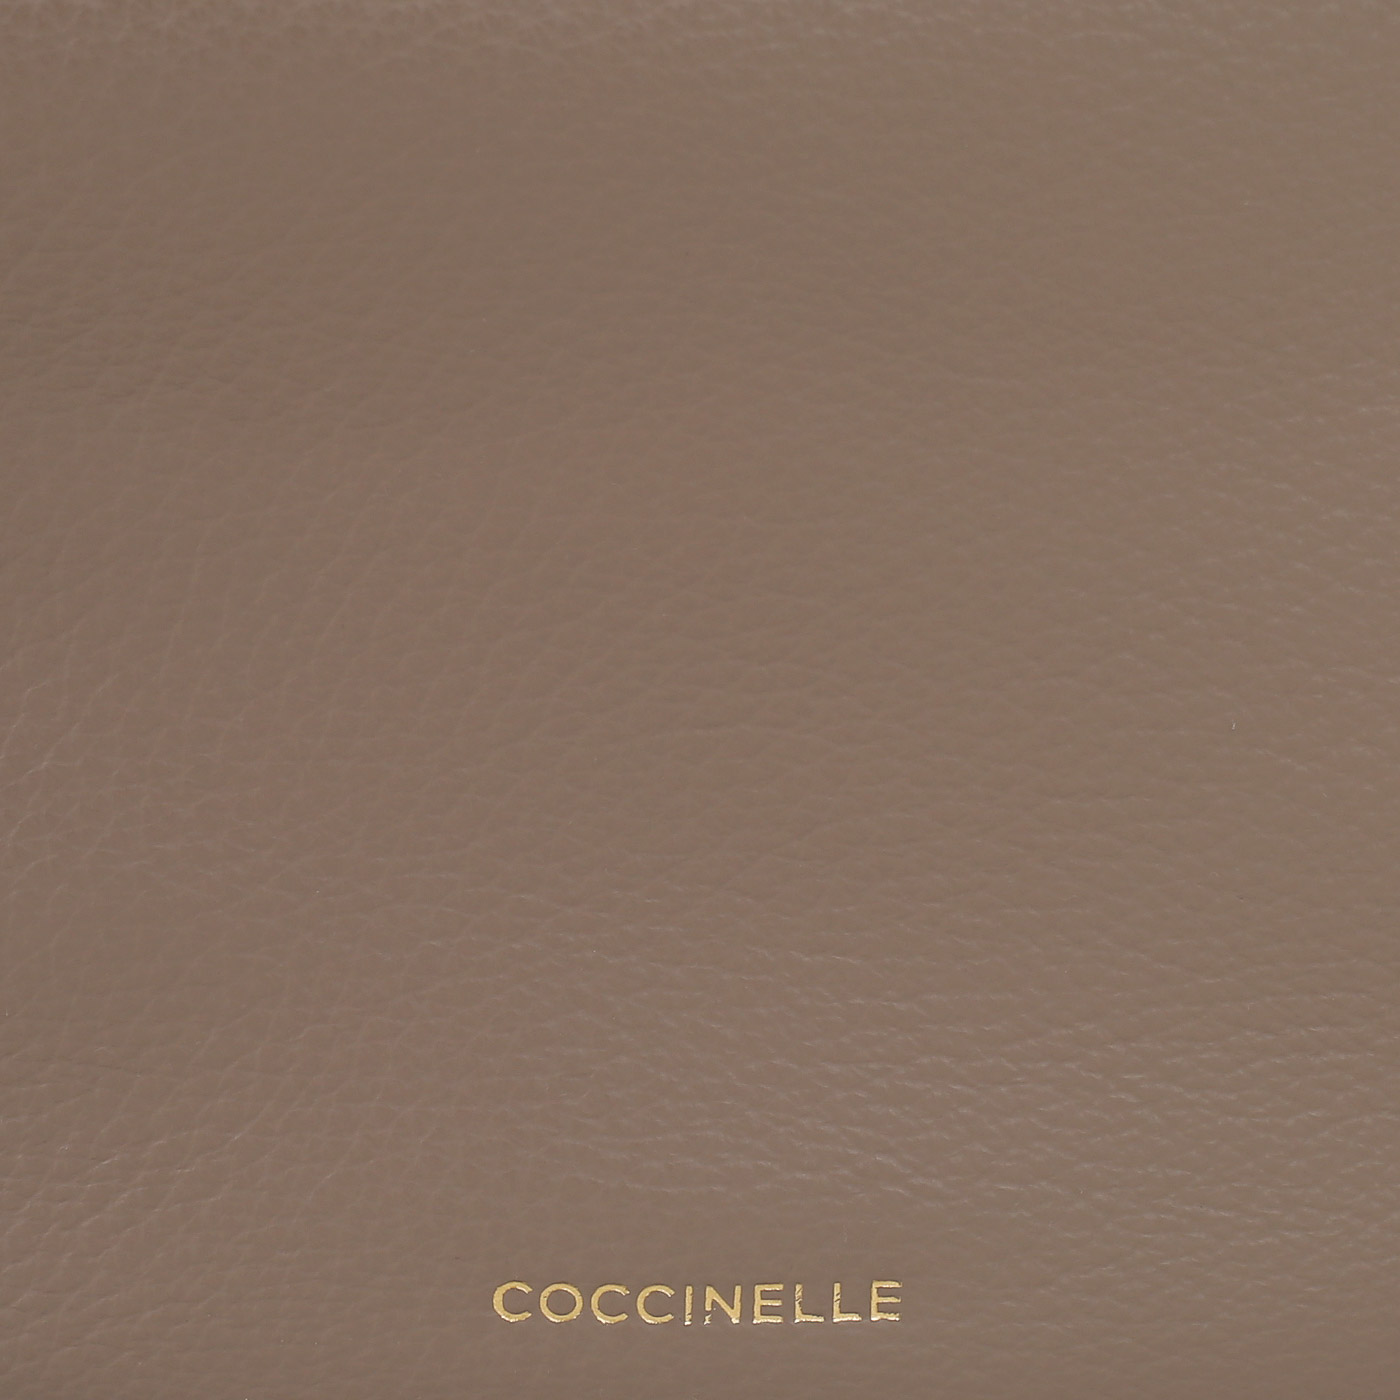 Кожаная сумка Coccinelle CoccinelleSunnie